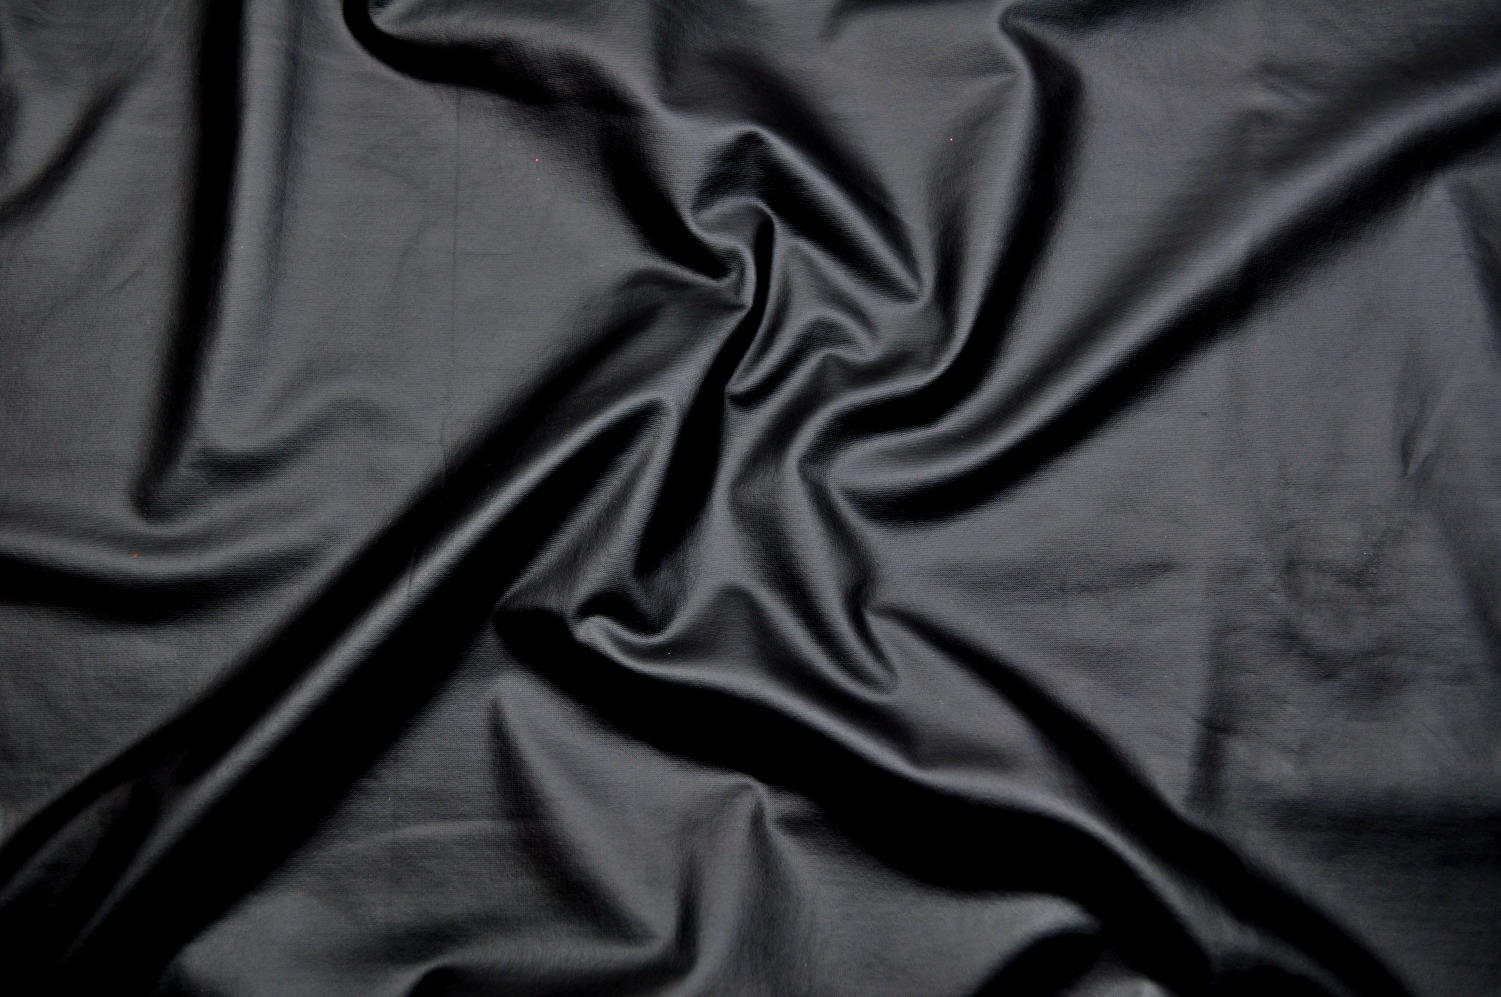 Черная ткань текстура бесшовная